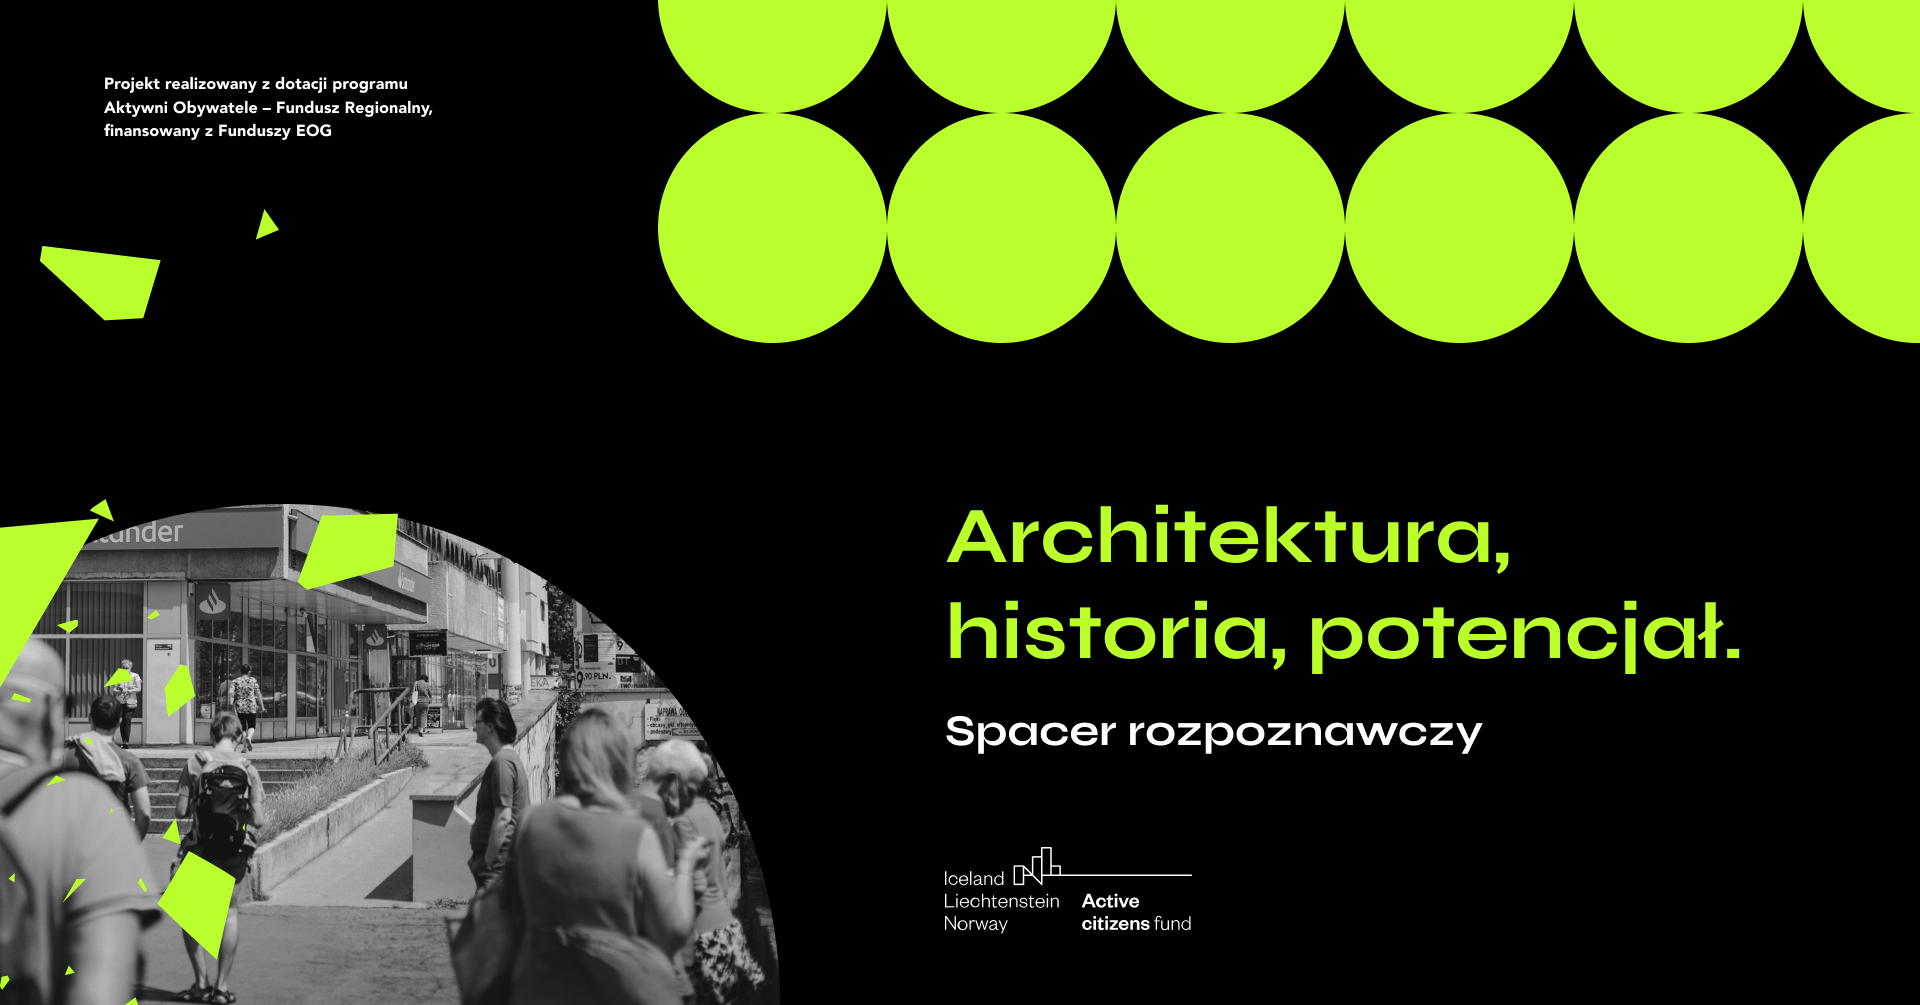 Czarna grafika, po prawej stronie zielony tekst: Architektura, historia, potencjał. Spacer rozpoznawczy. Po lewej stronie fragment czarno-białego zdjęcia przedstawiającego grunwaldzką esplanadę.